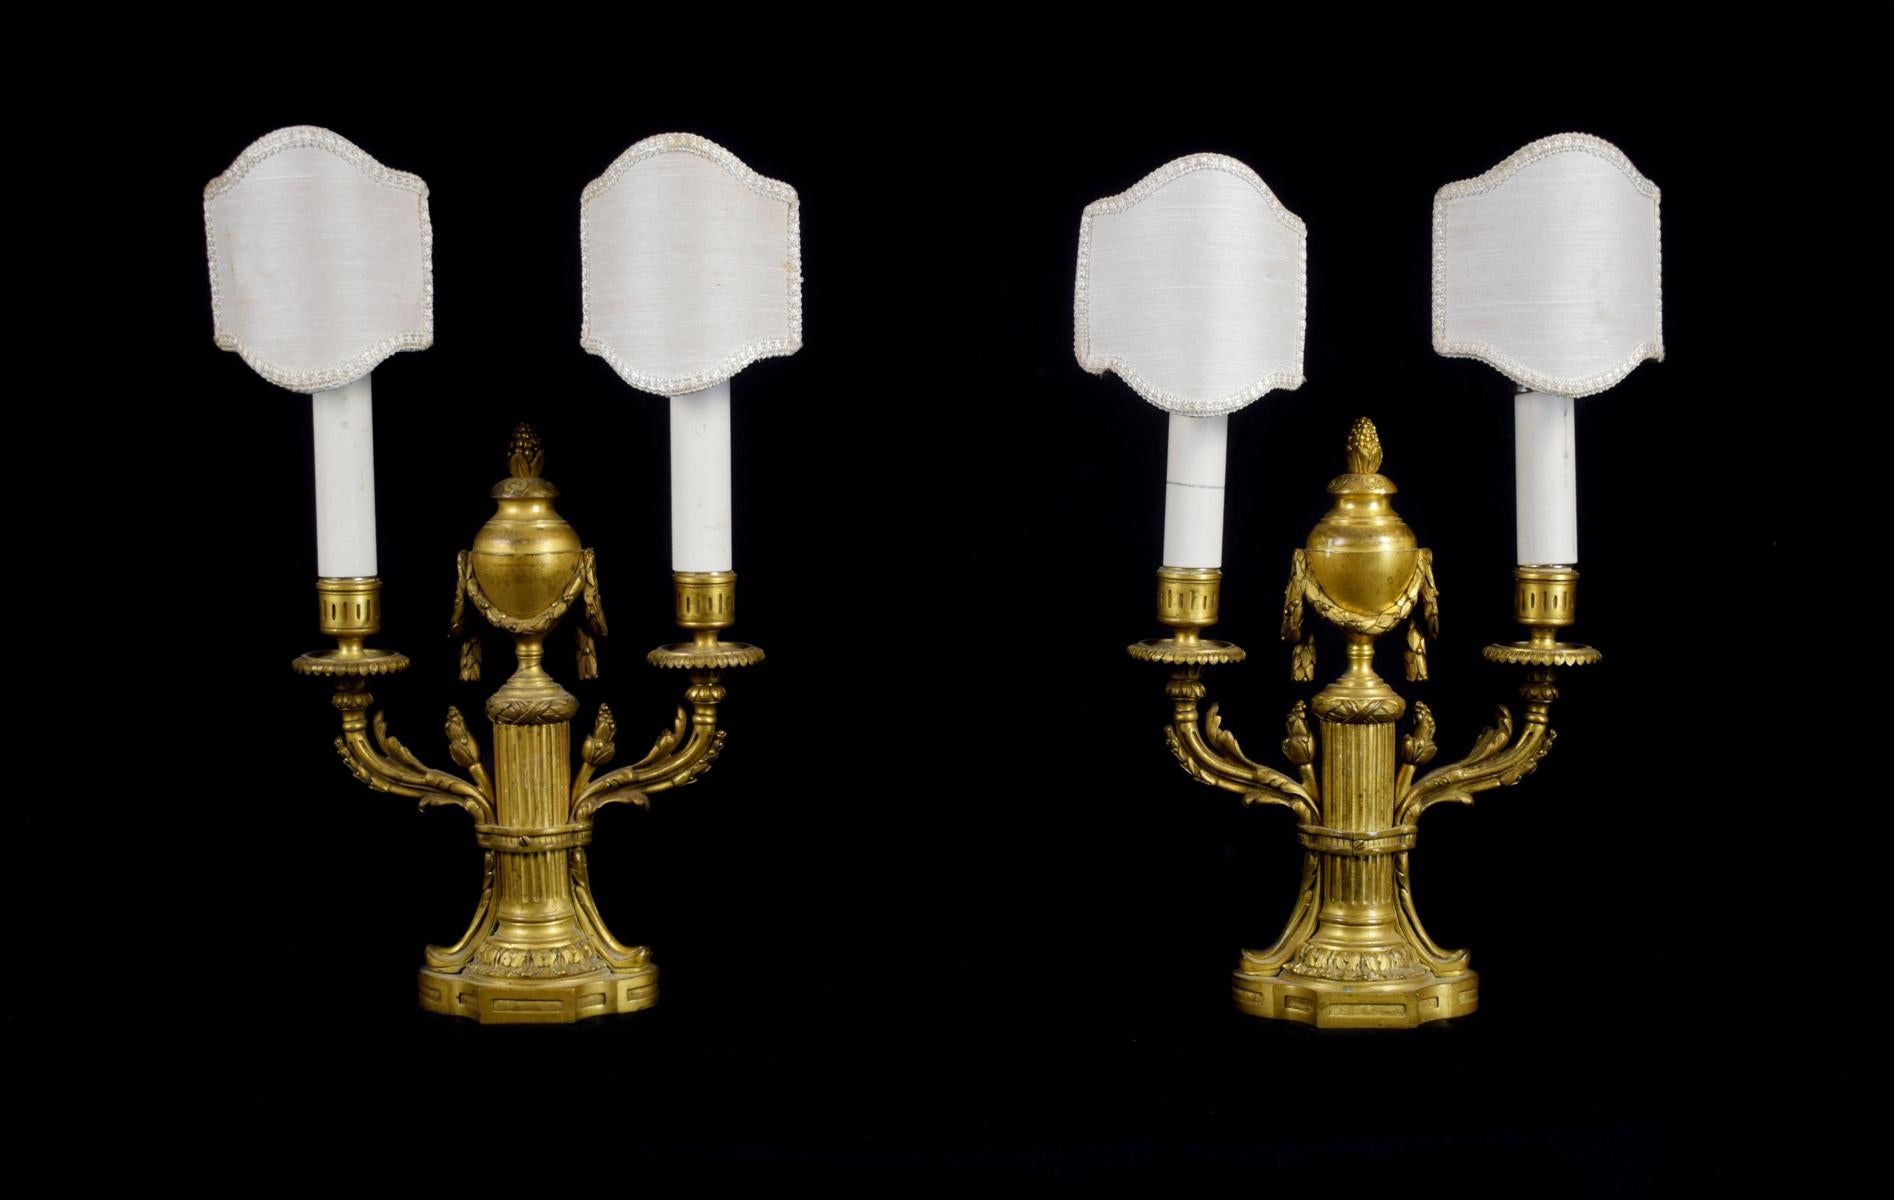 19. Jahrhundert, zwei französische Louis XVI-Leuchter aus vergoldeter Bronze
Maße: Gesamthöhe cm 39,5 x Höhe Bronze 29 x B 20 x T 9 cm

Das schöne Paar Kerzenständer wurde im 19. Jahrhundert in Frankreich aus fein ziselierter und vergoldeter Bronze